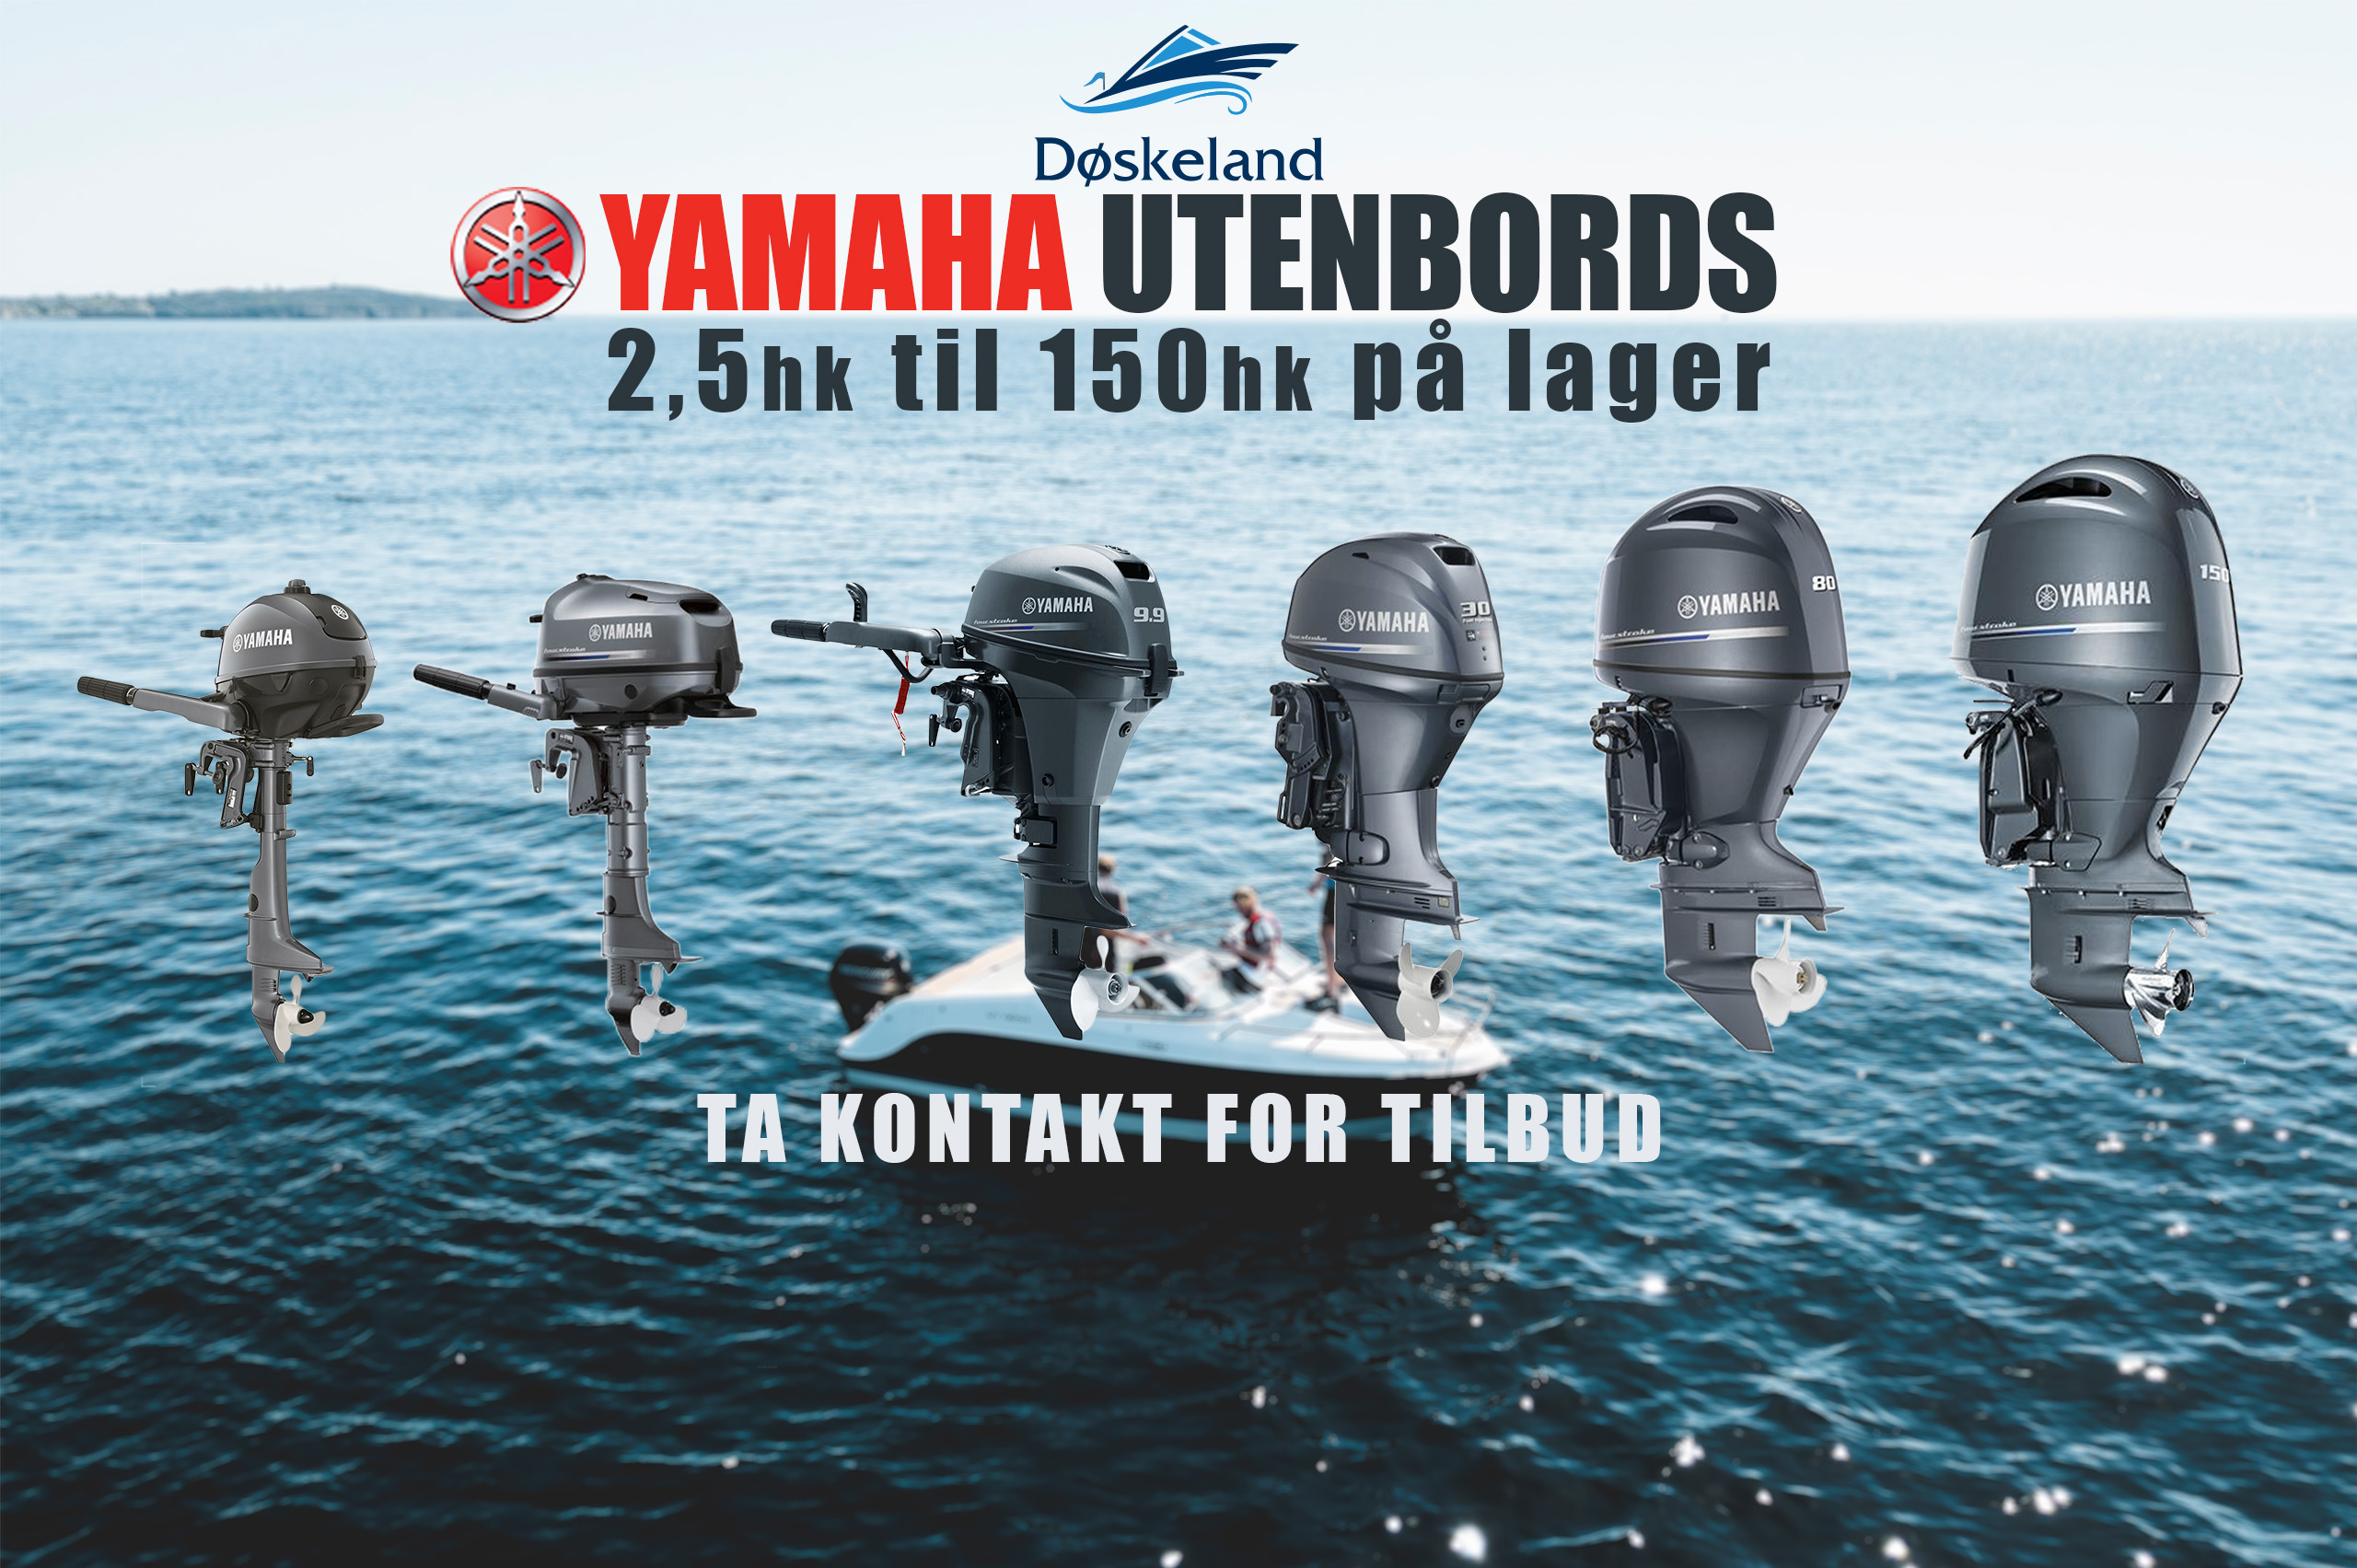 Yamaha_Utenbords_Infobilde_nettside-1